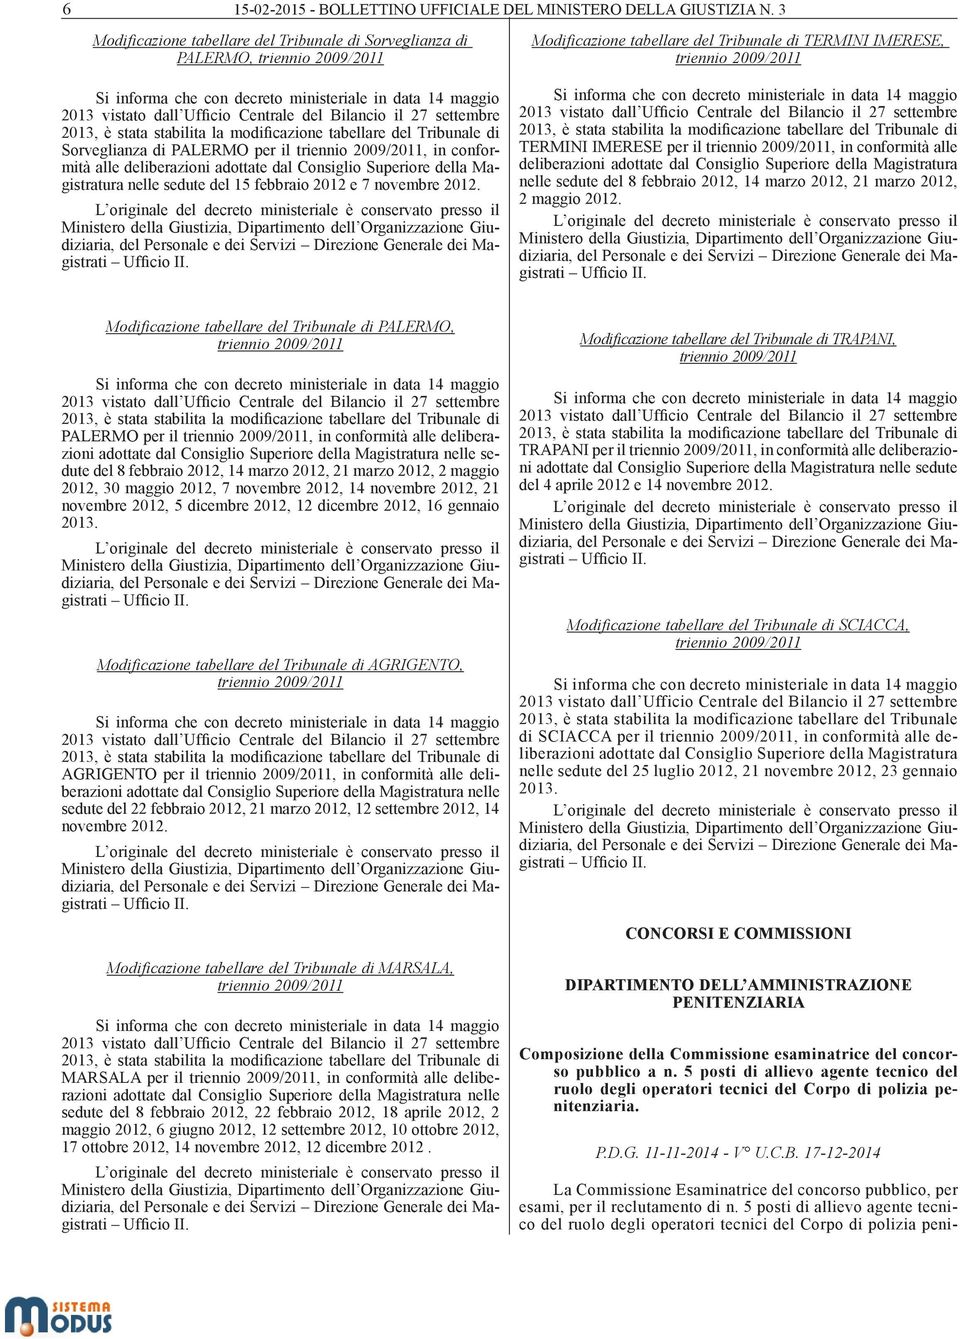 settembre 2013, è stata stabilita la modificazione tabellare del Tribunale di Sorveglianza di PALERMO per il triennio 2009/2011, in conformità alle deliberazioni adottate dal Consiglio Superiore